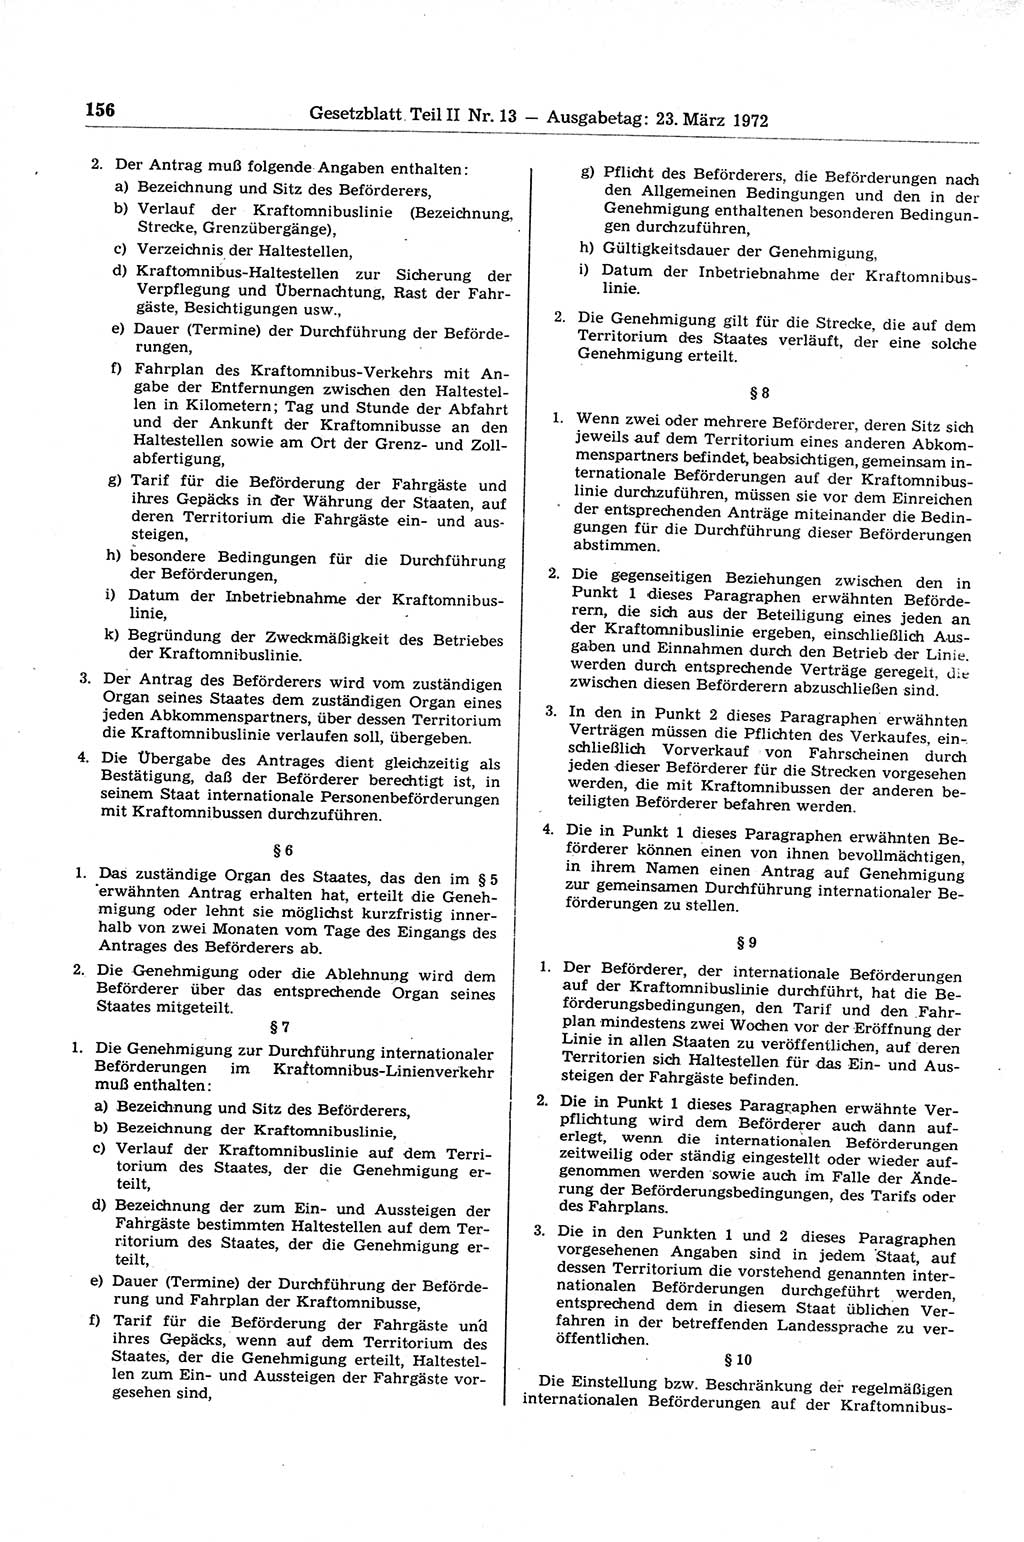 Gesetzblatt (GBl.) der Deutschen Demokratischen Republik (DDR) Teil ⅠⅠ 1972, Seite 156 (GBl. DDR ⅠⅠ 1972, S. 156)